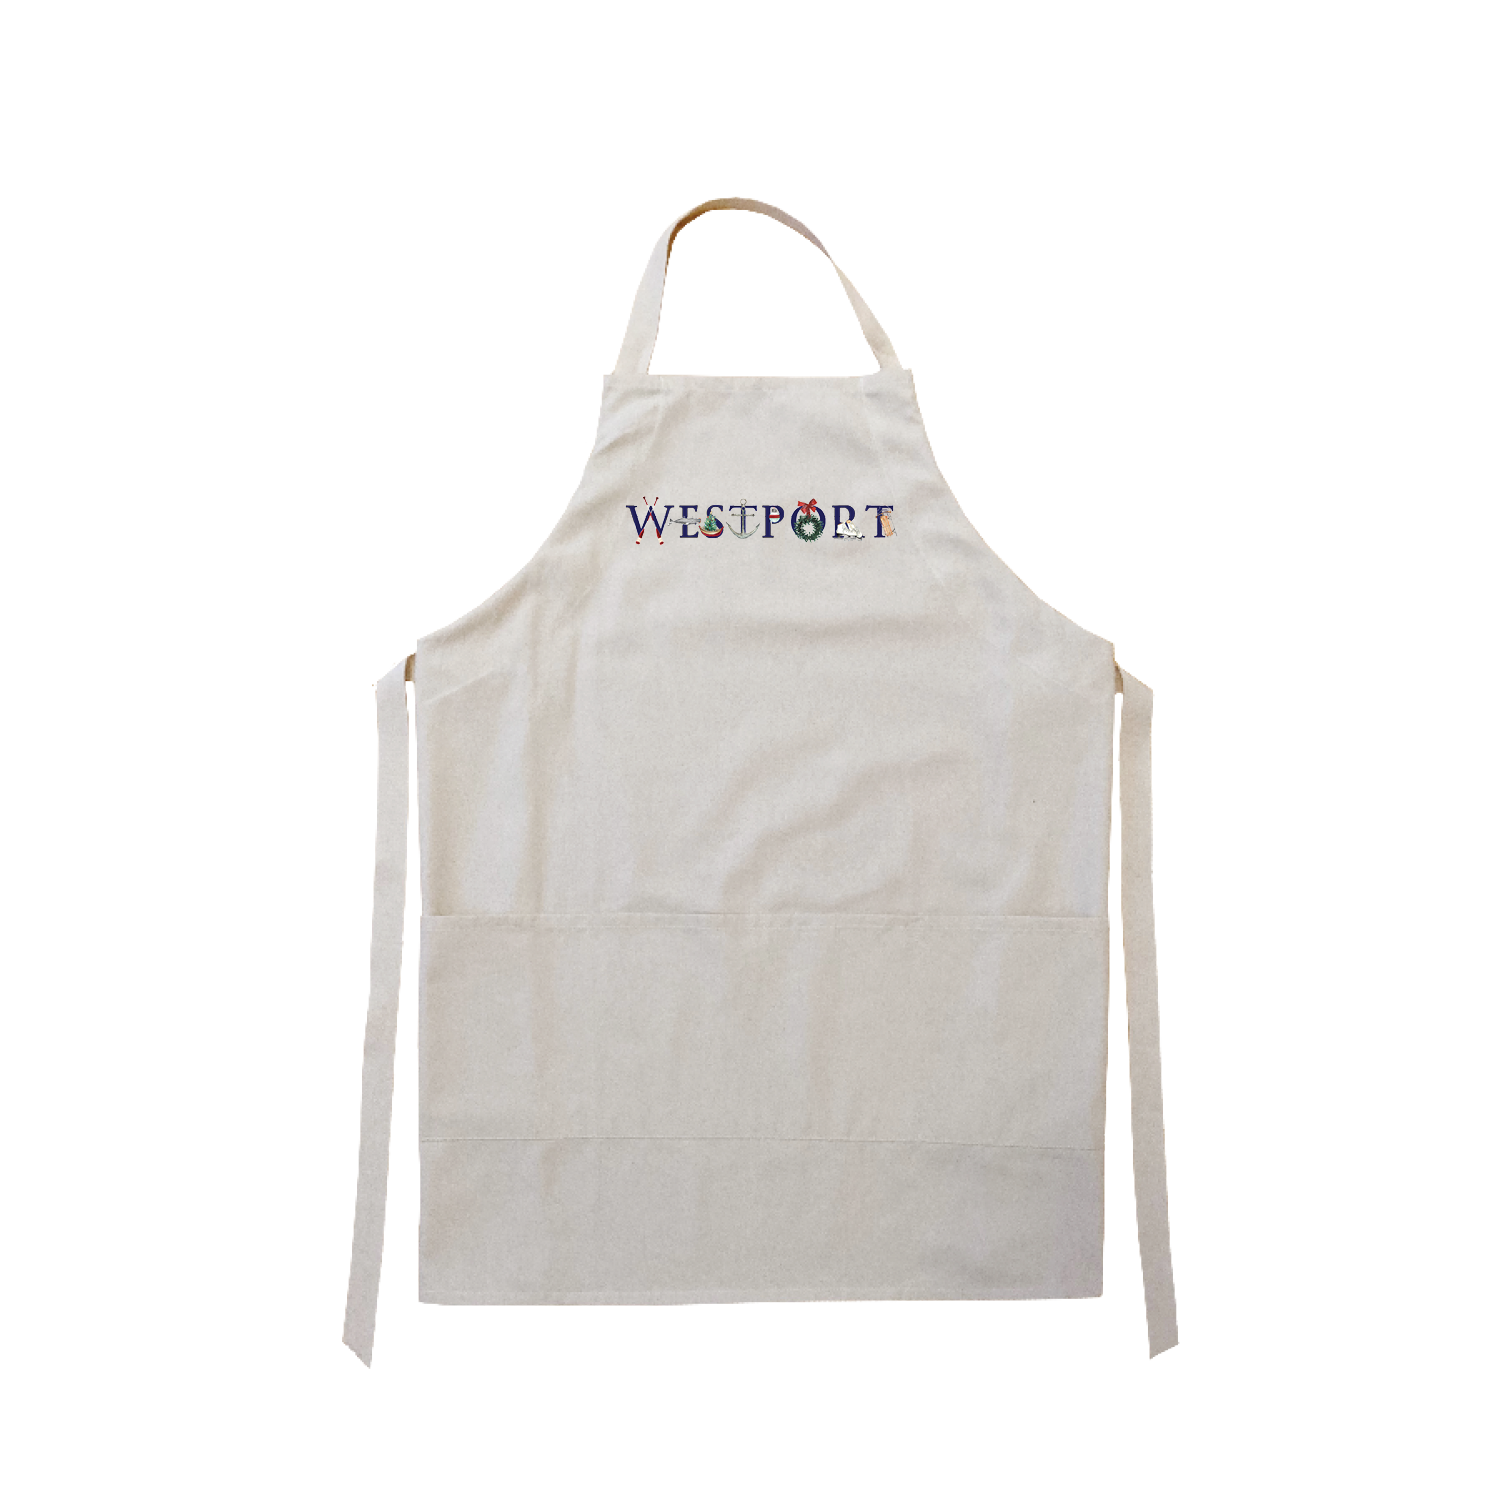 Westport winter apron